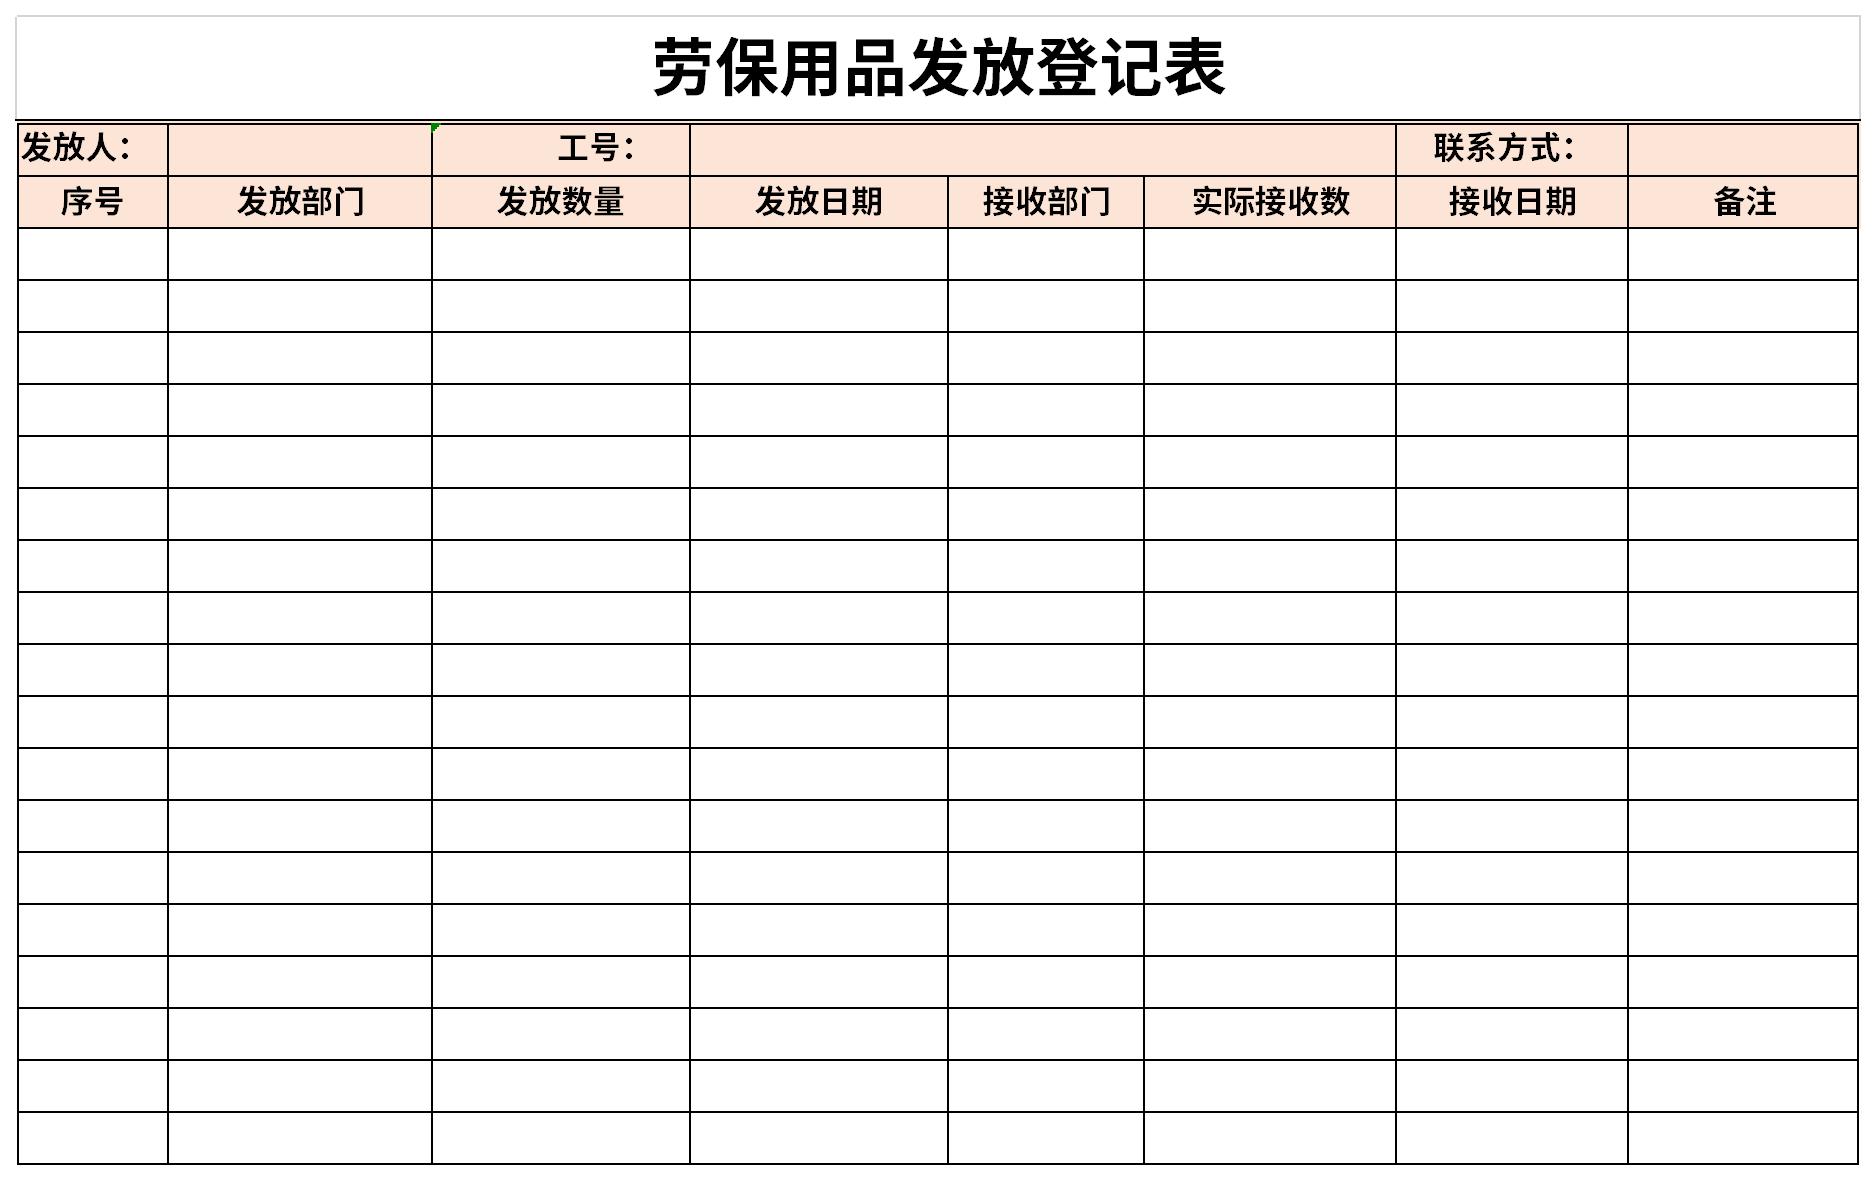 劳保用品发放登记表excel格式下载-华军软件园